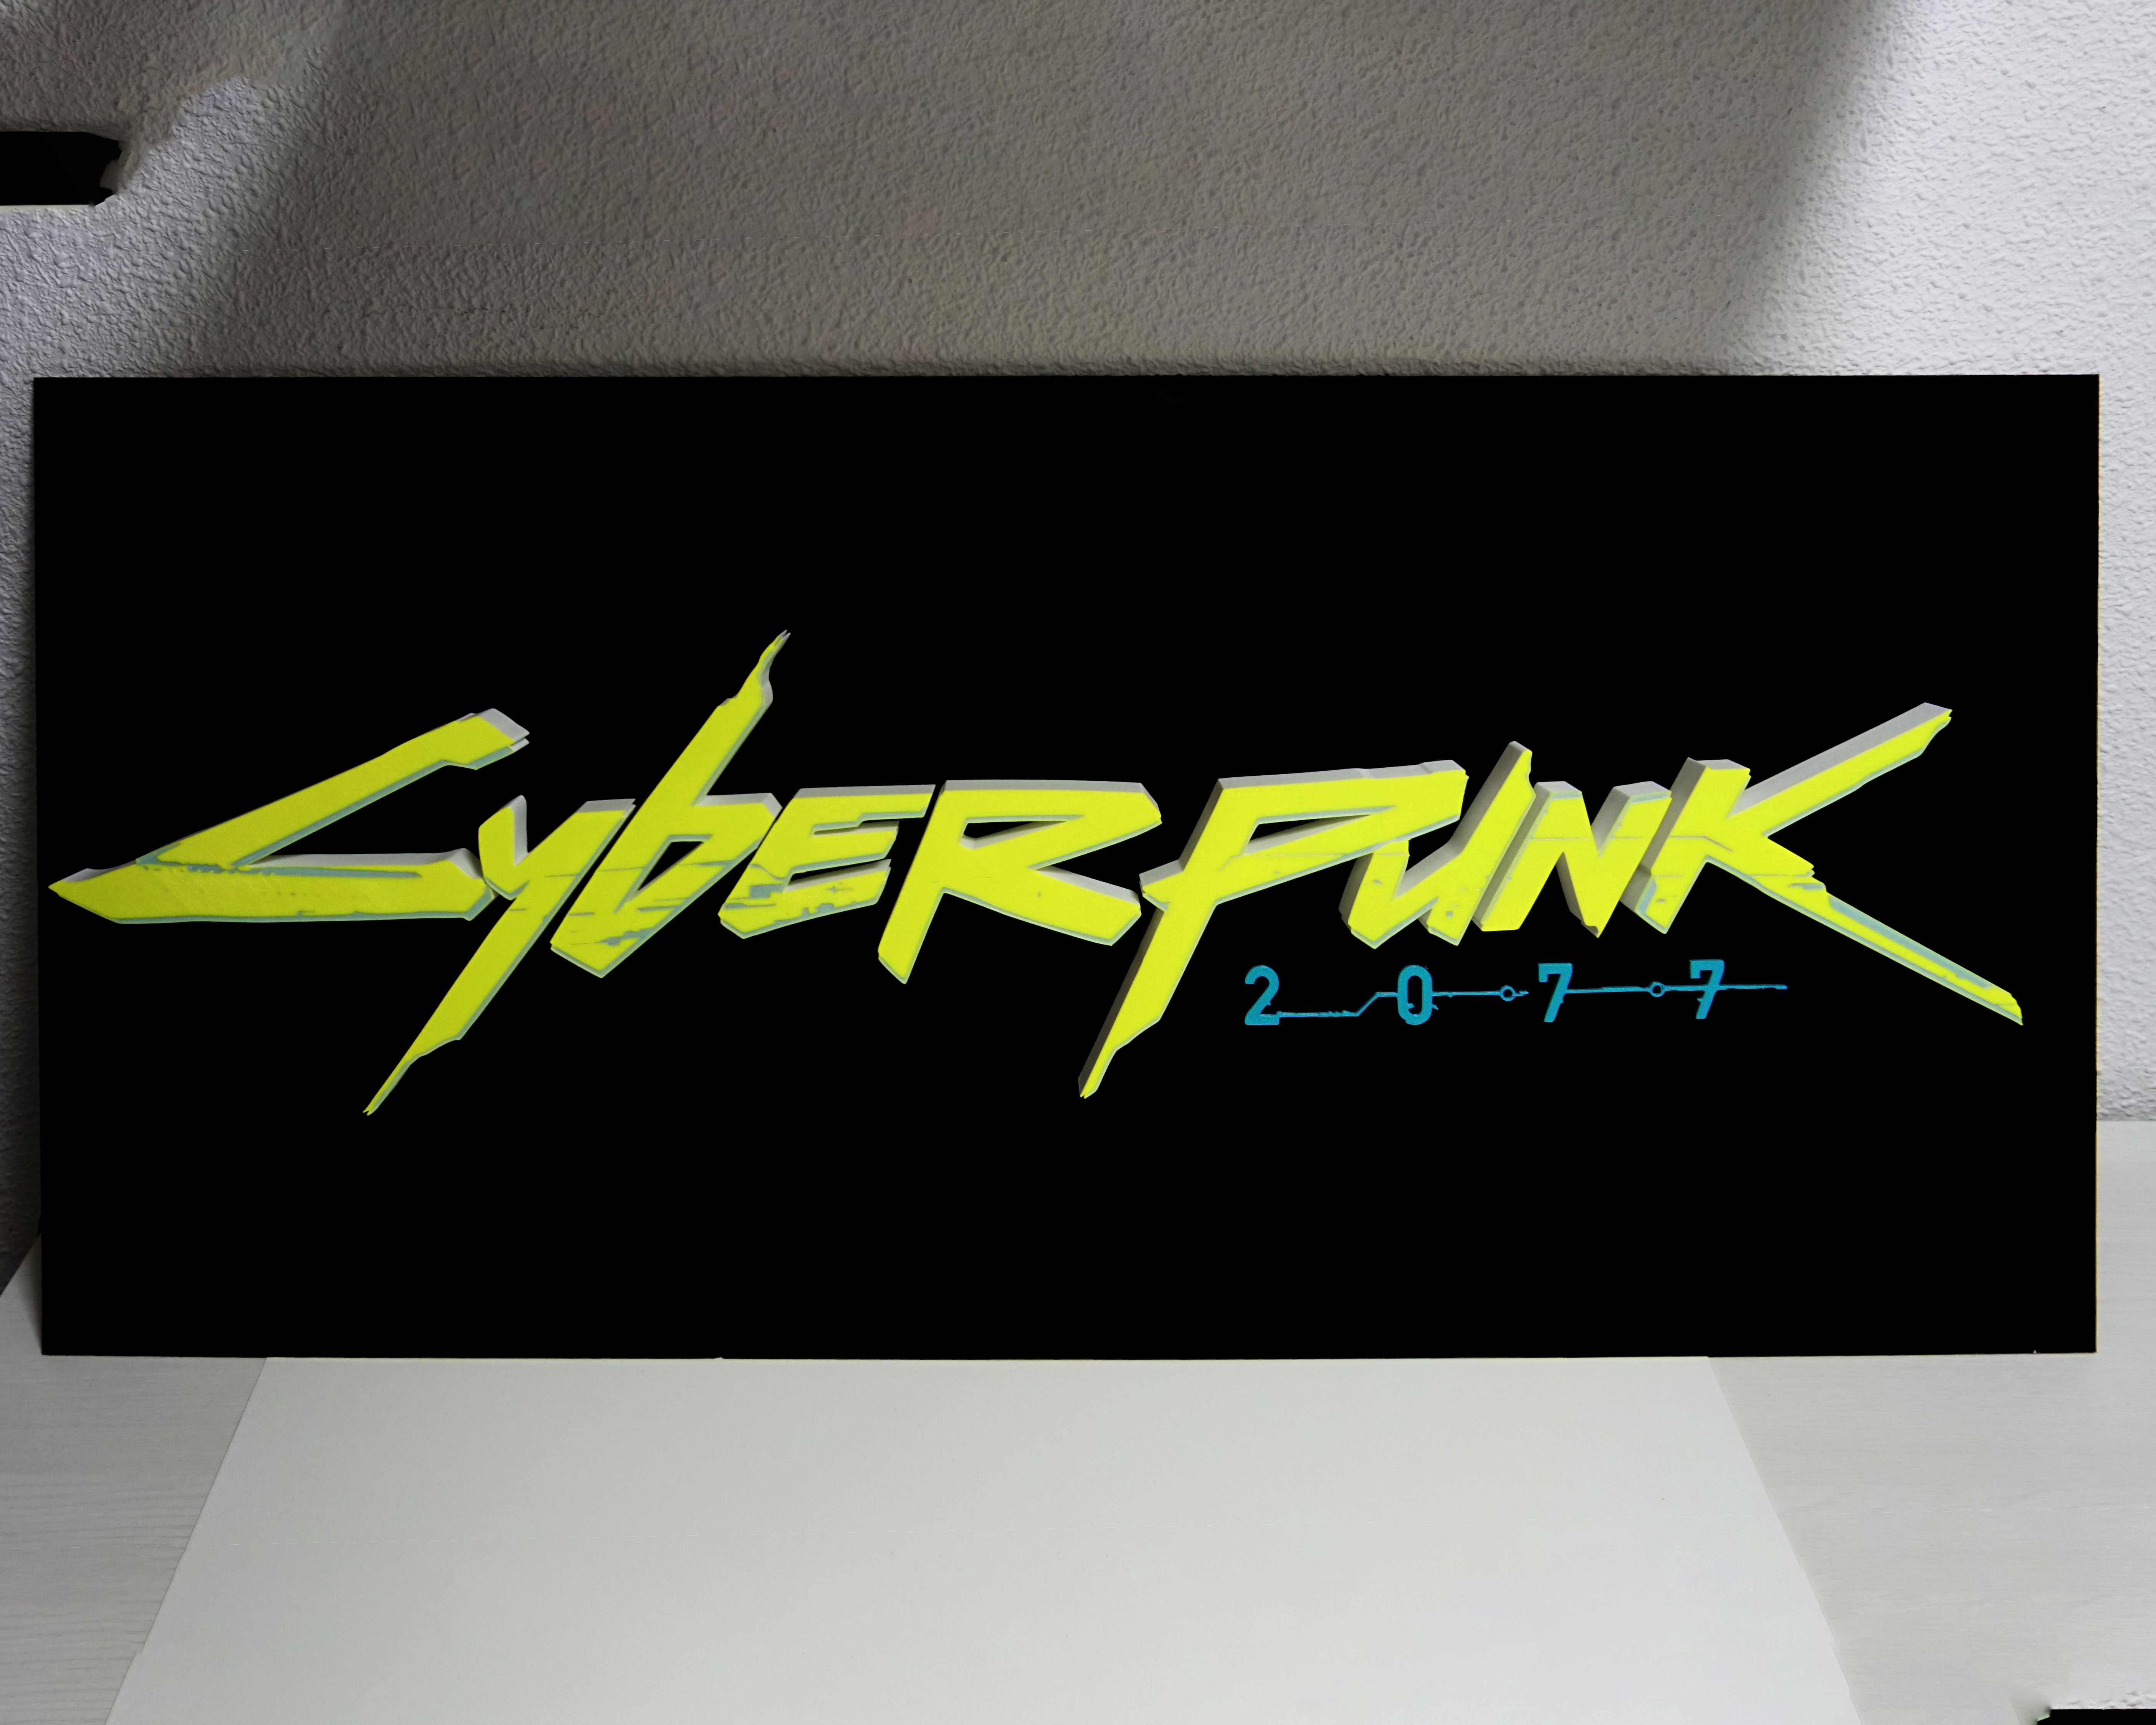 Cyberpunk Logo 3D Wall Decor - Etsy